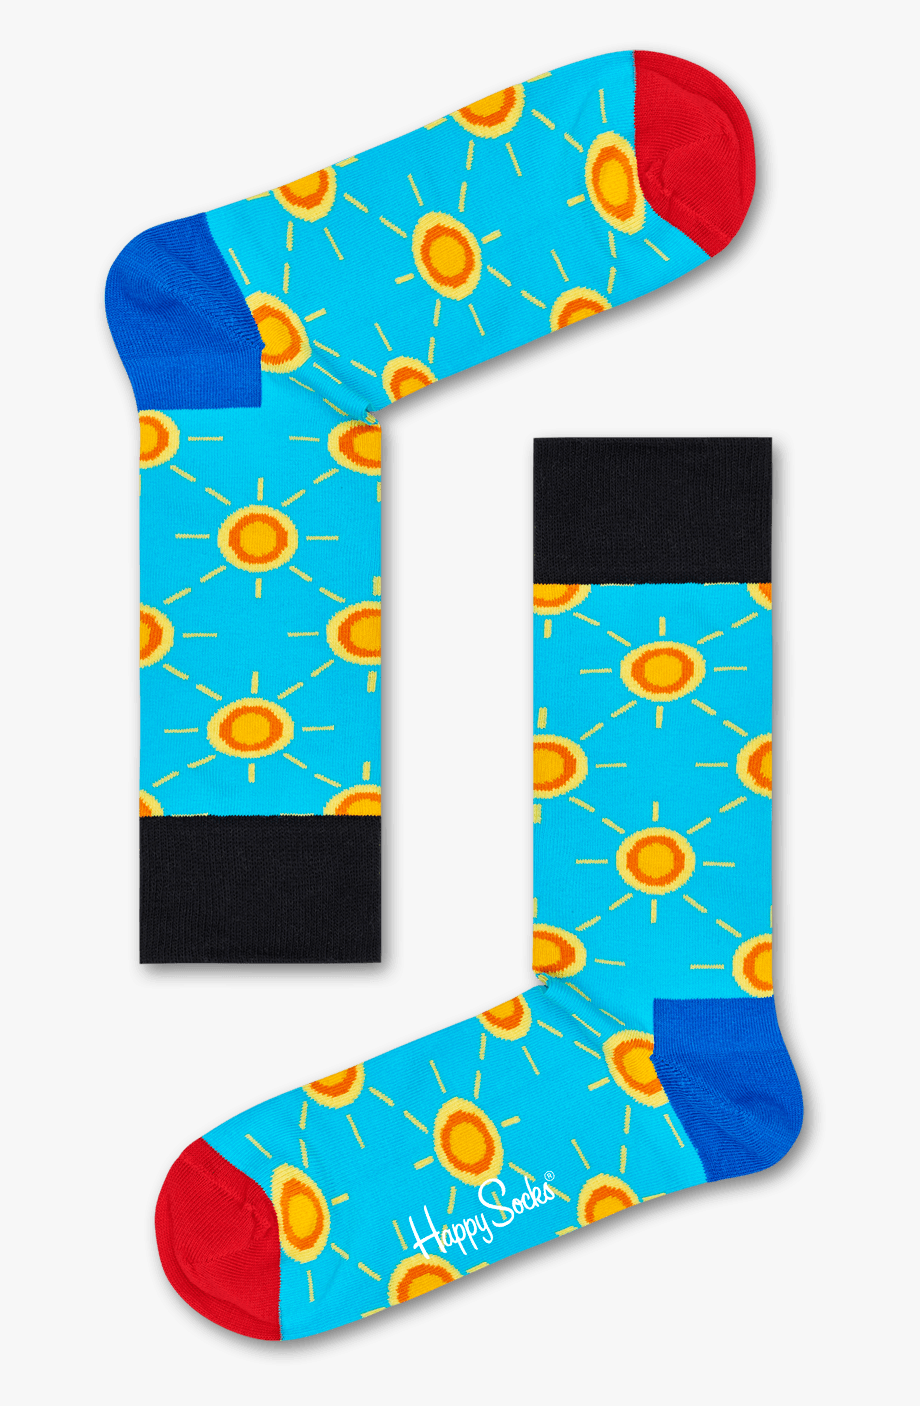 socks clipart patterned sock